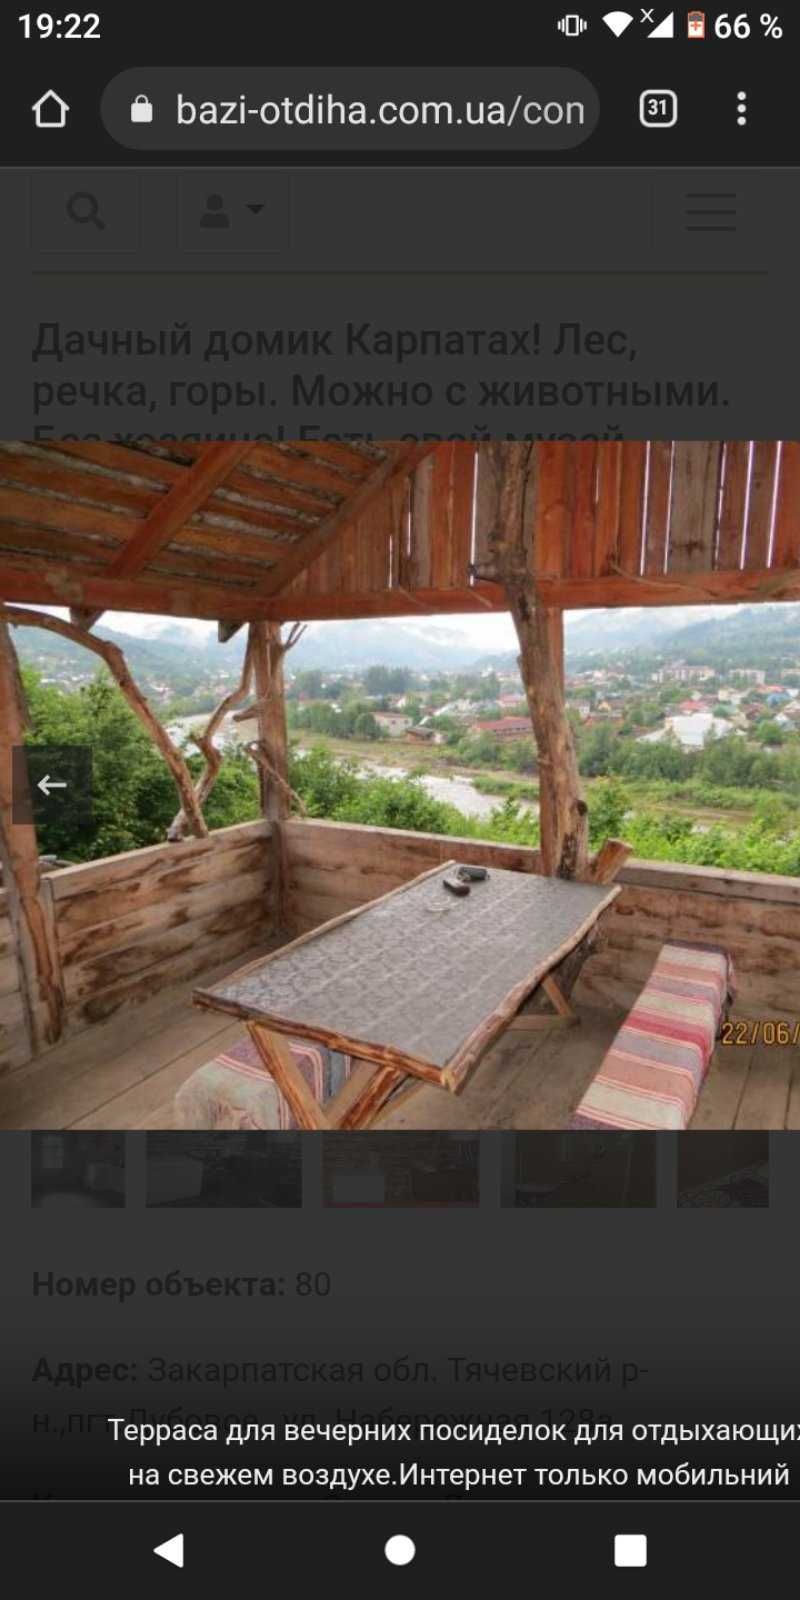 Продам дерев'яний домик в Карпатах